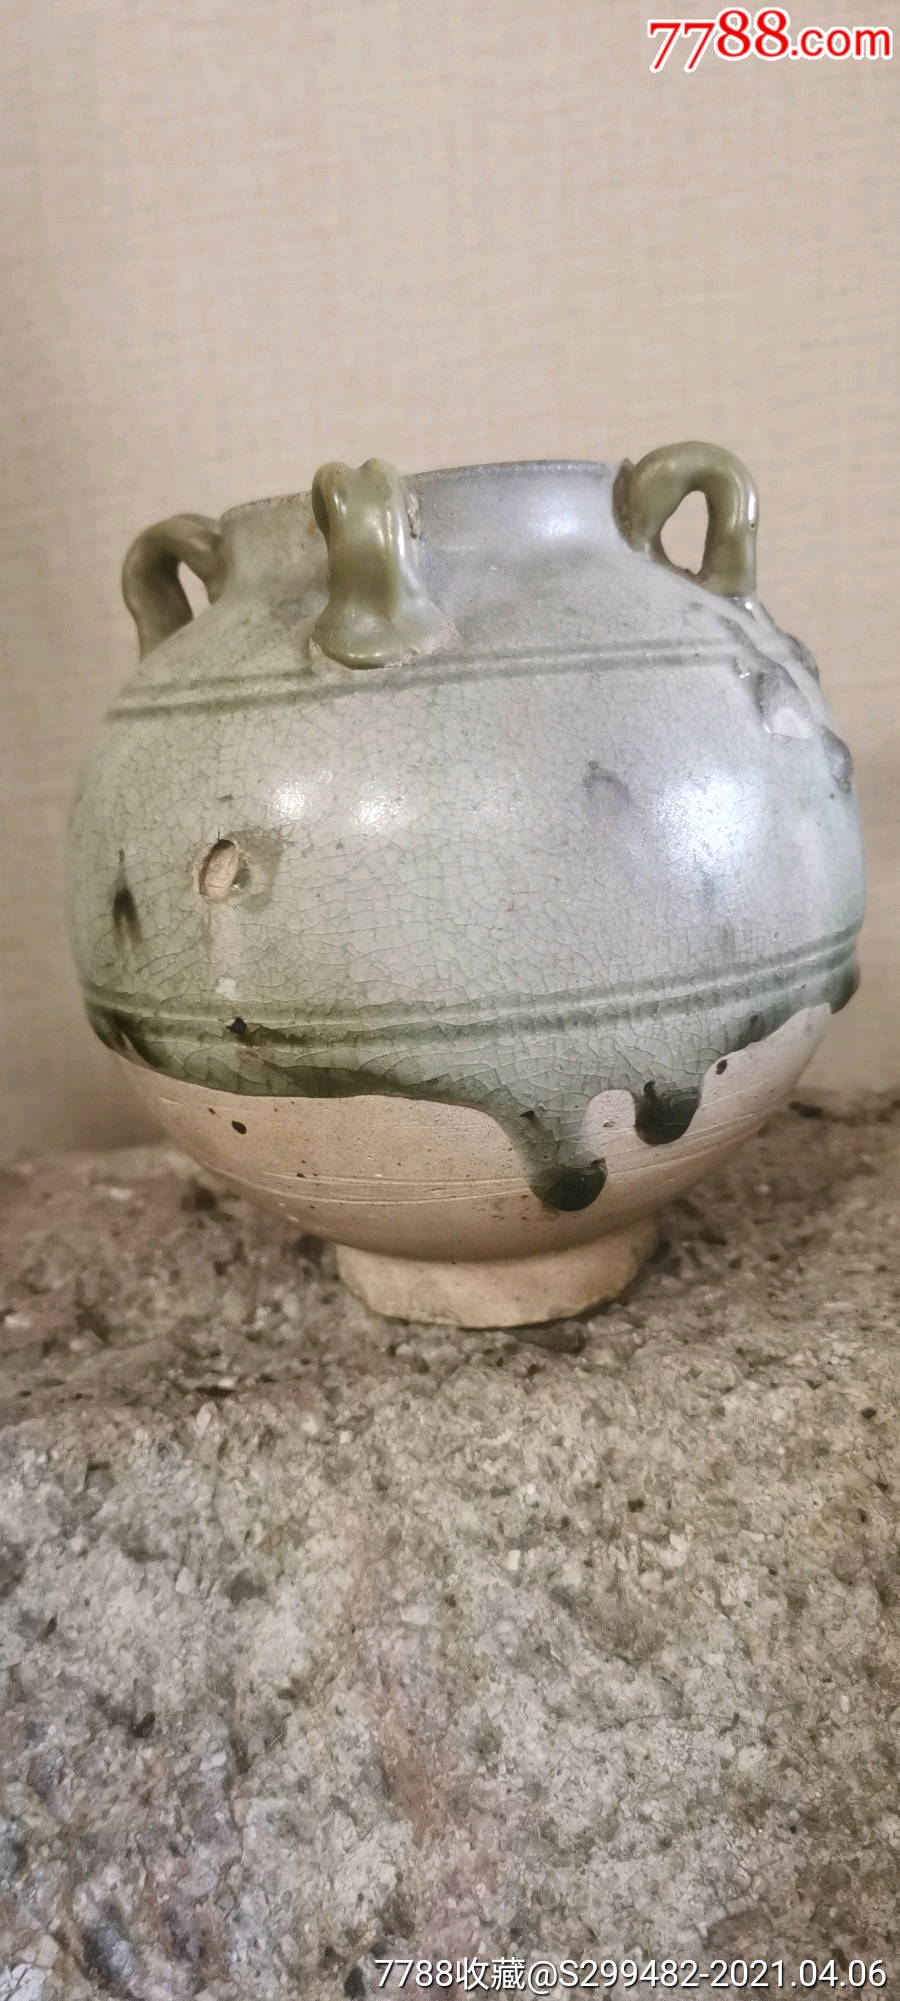 隋唐时期的青瓷罐